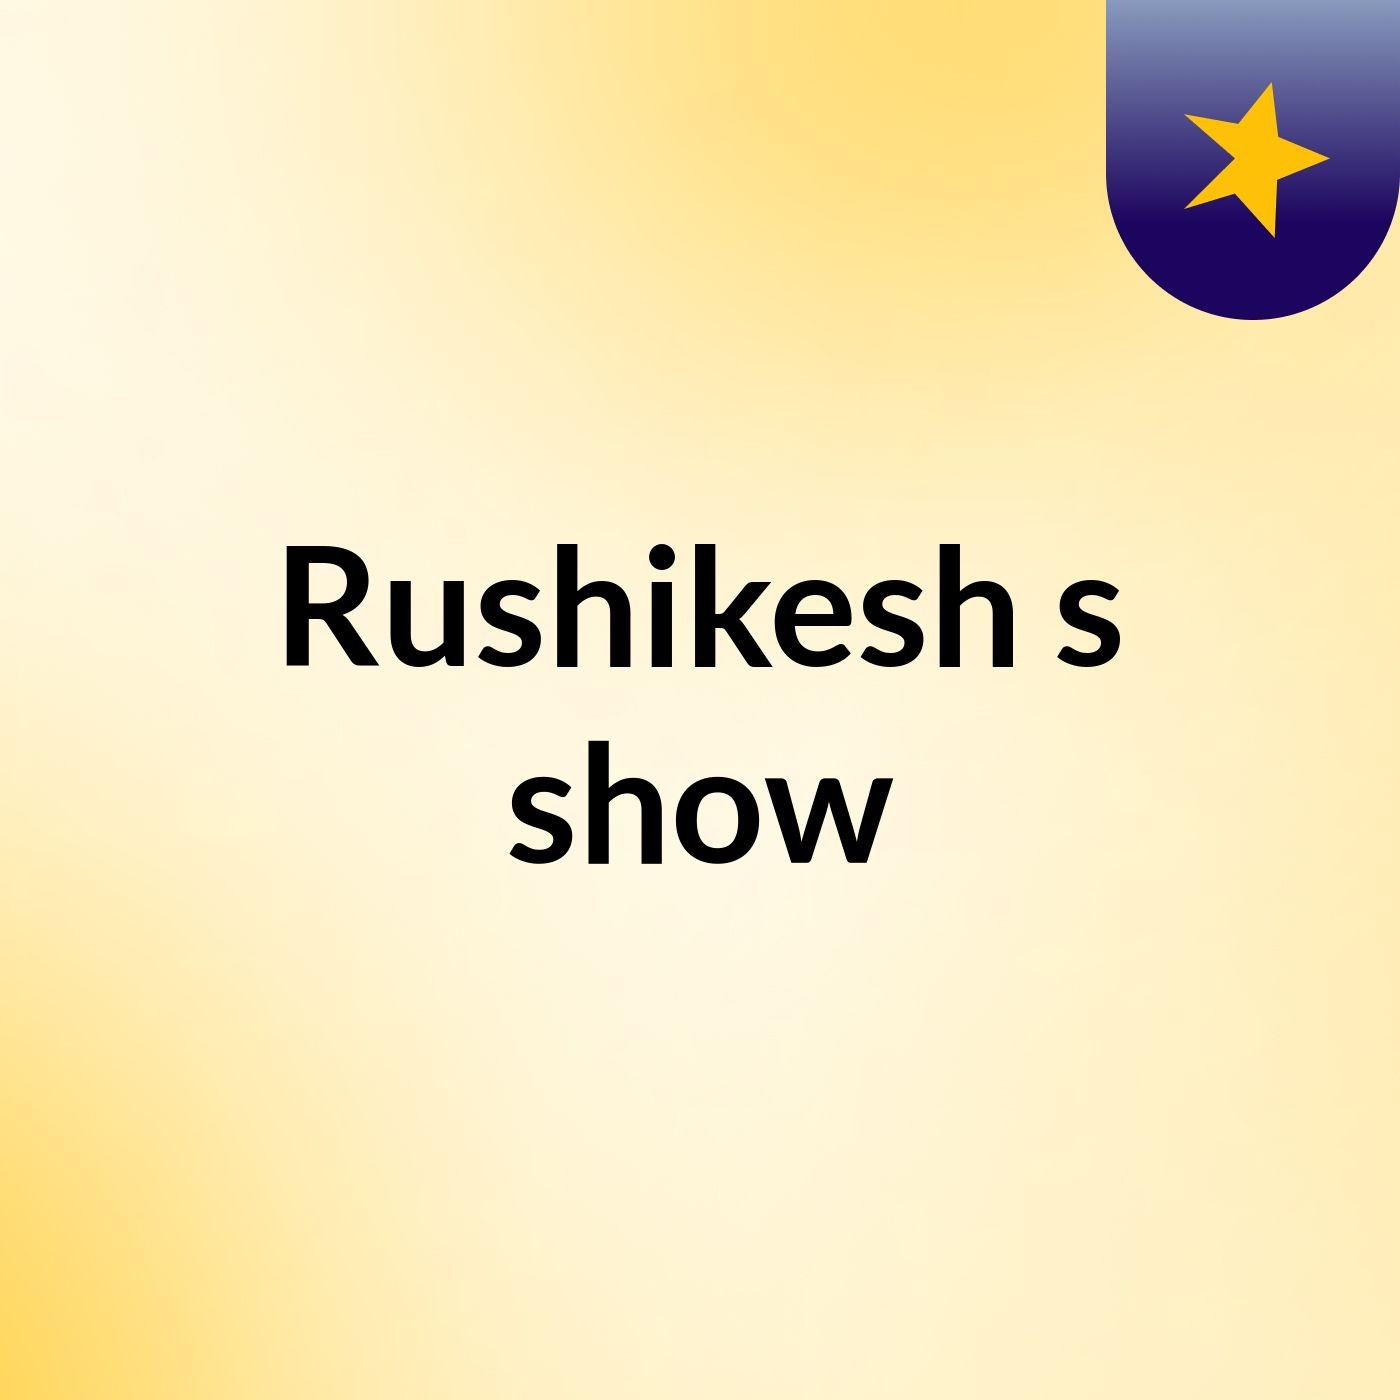 Rushikesh's show